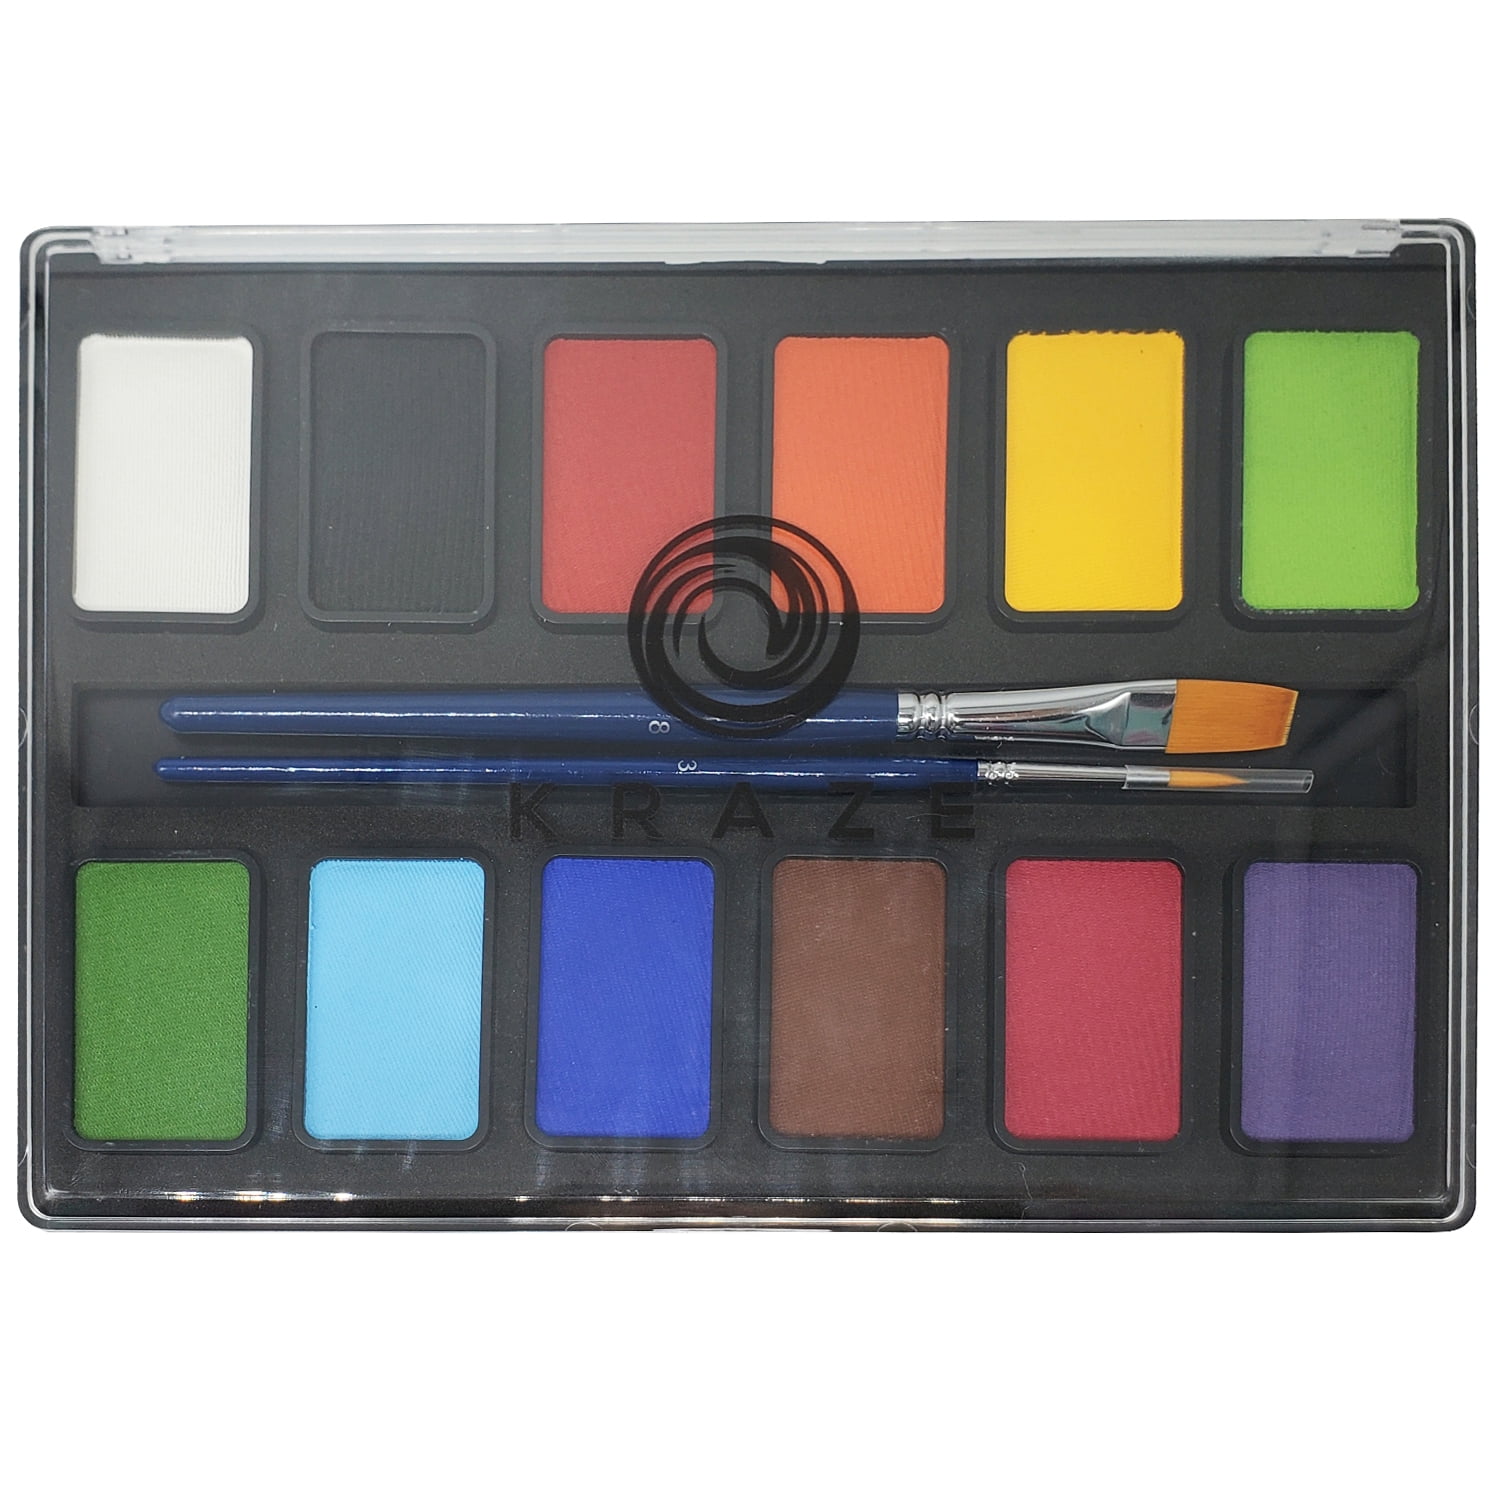 10 Grid Body Paint Facepaint Makeup Kit Face Painting Kit Washable